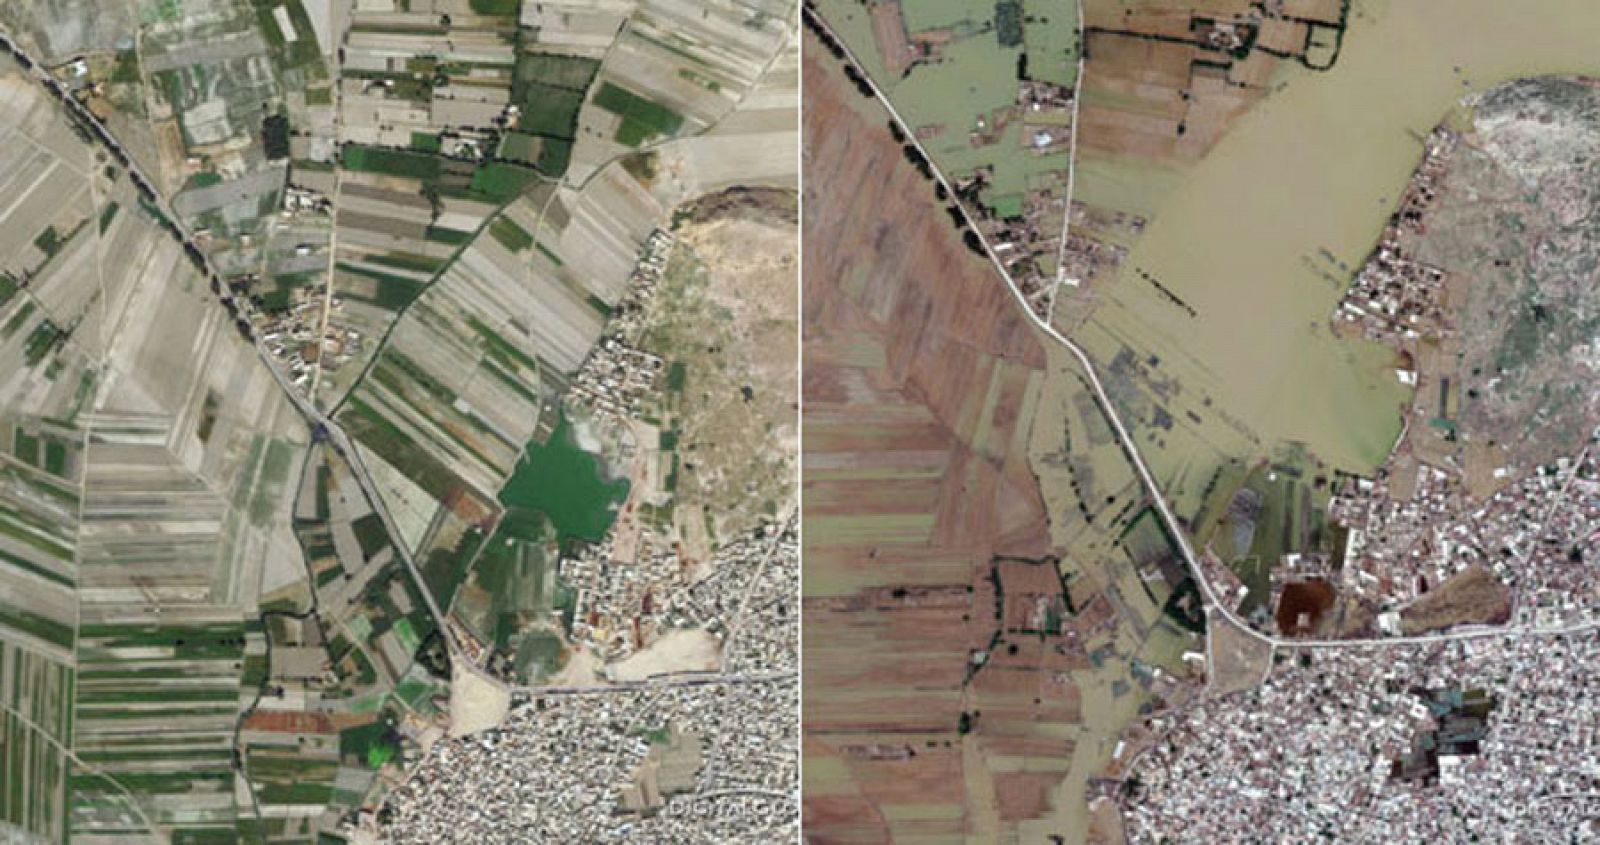 Imagen aérea de la zona de Nowshera que muestra el antes y el despúes de la zona. Según las autoridades paquistaníes, las inundaciones han destruído más de 700.000 viviendas. (Foto satélite cortesía de GeoEye)